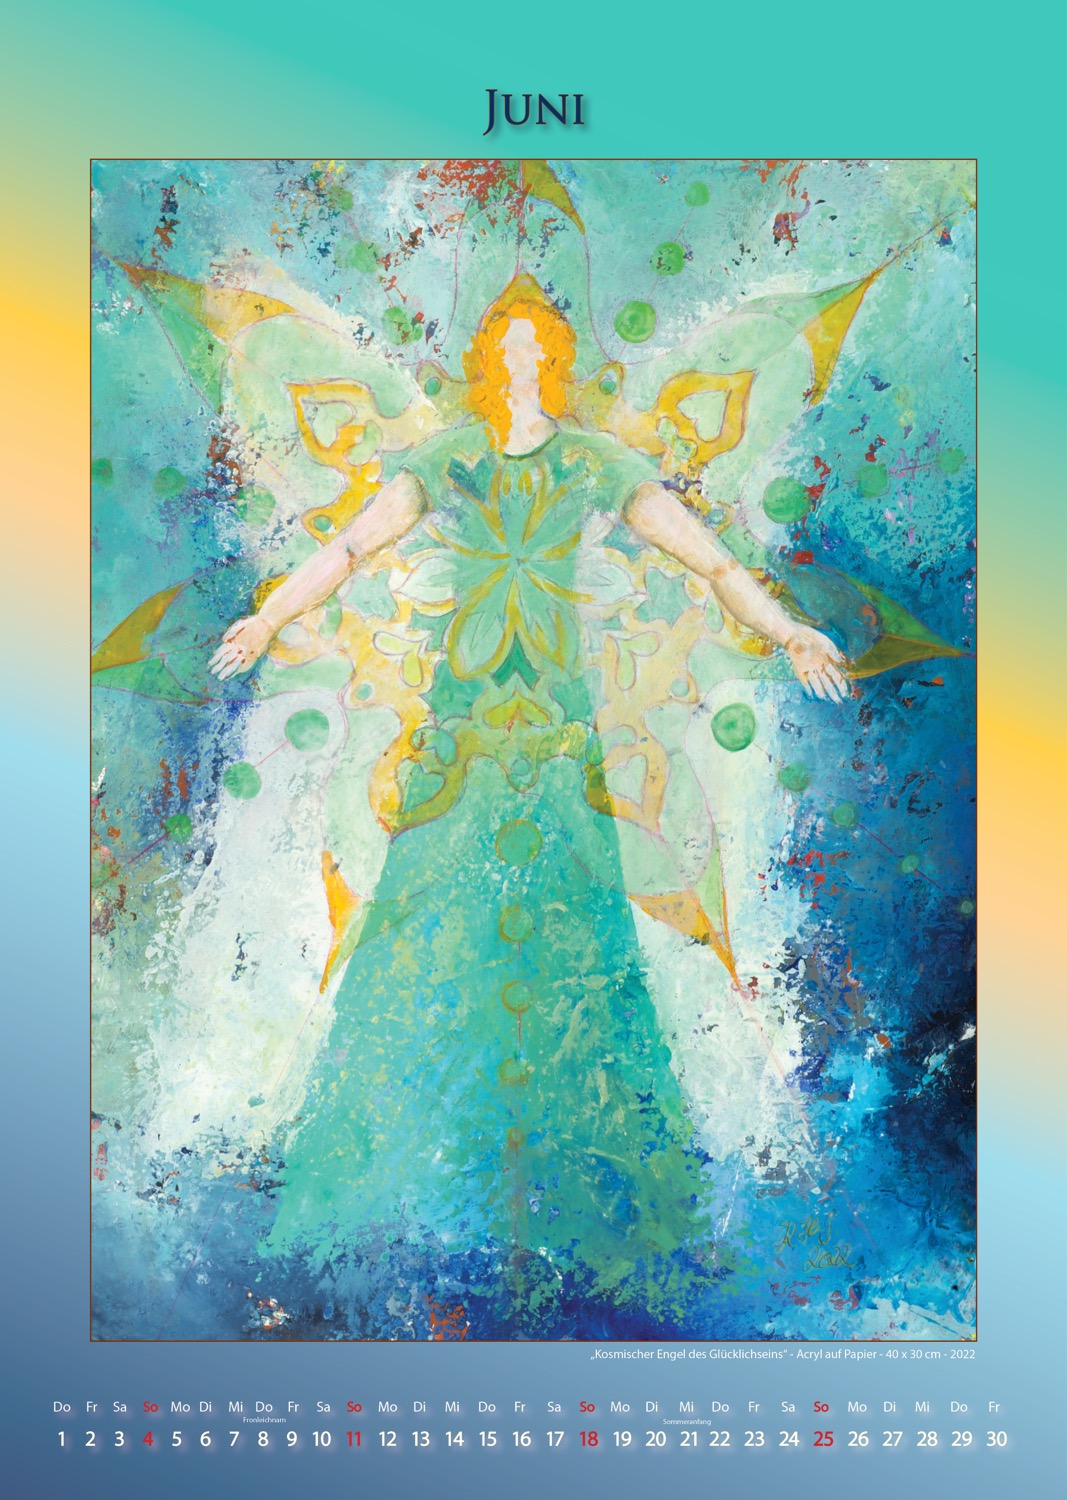 Kosmischer Engel des Glücklichseins - Kalender - Juni 2023 © Katharina Hansen-Gluschitz